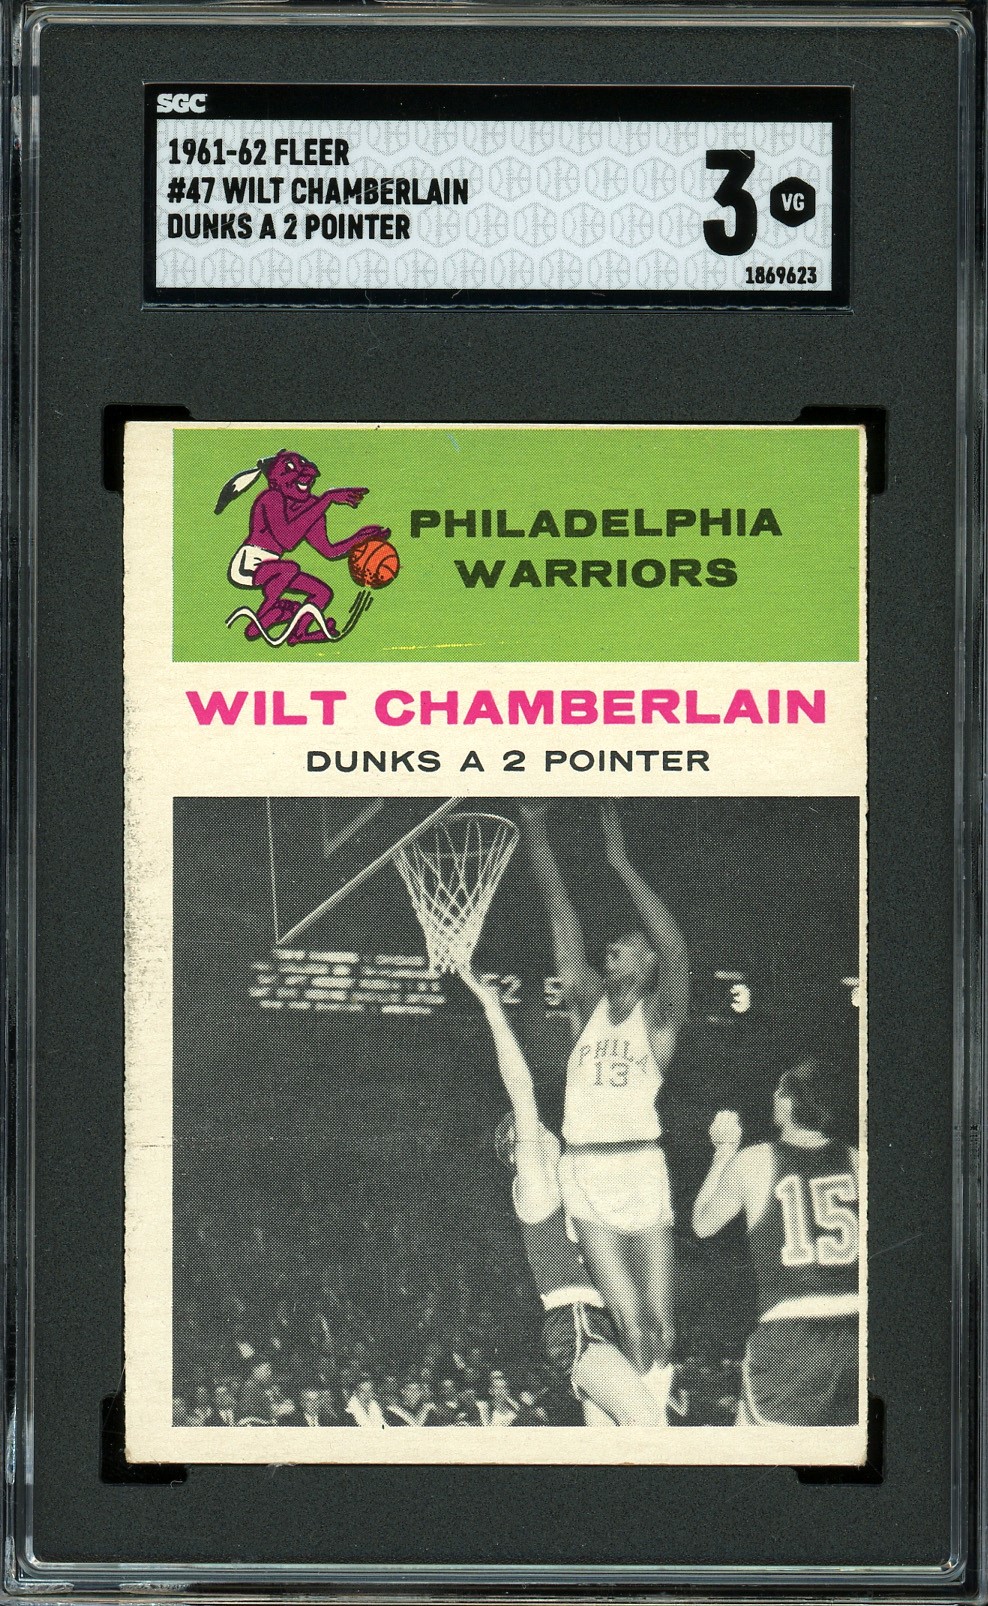 1961-1962 Fleer Basketball #47 Wilt Chamberlain (In Action) SGC VG 3